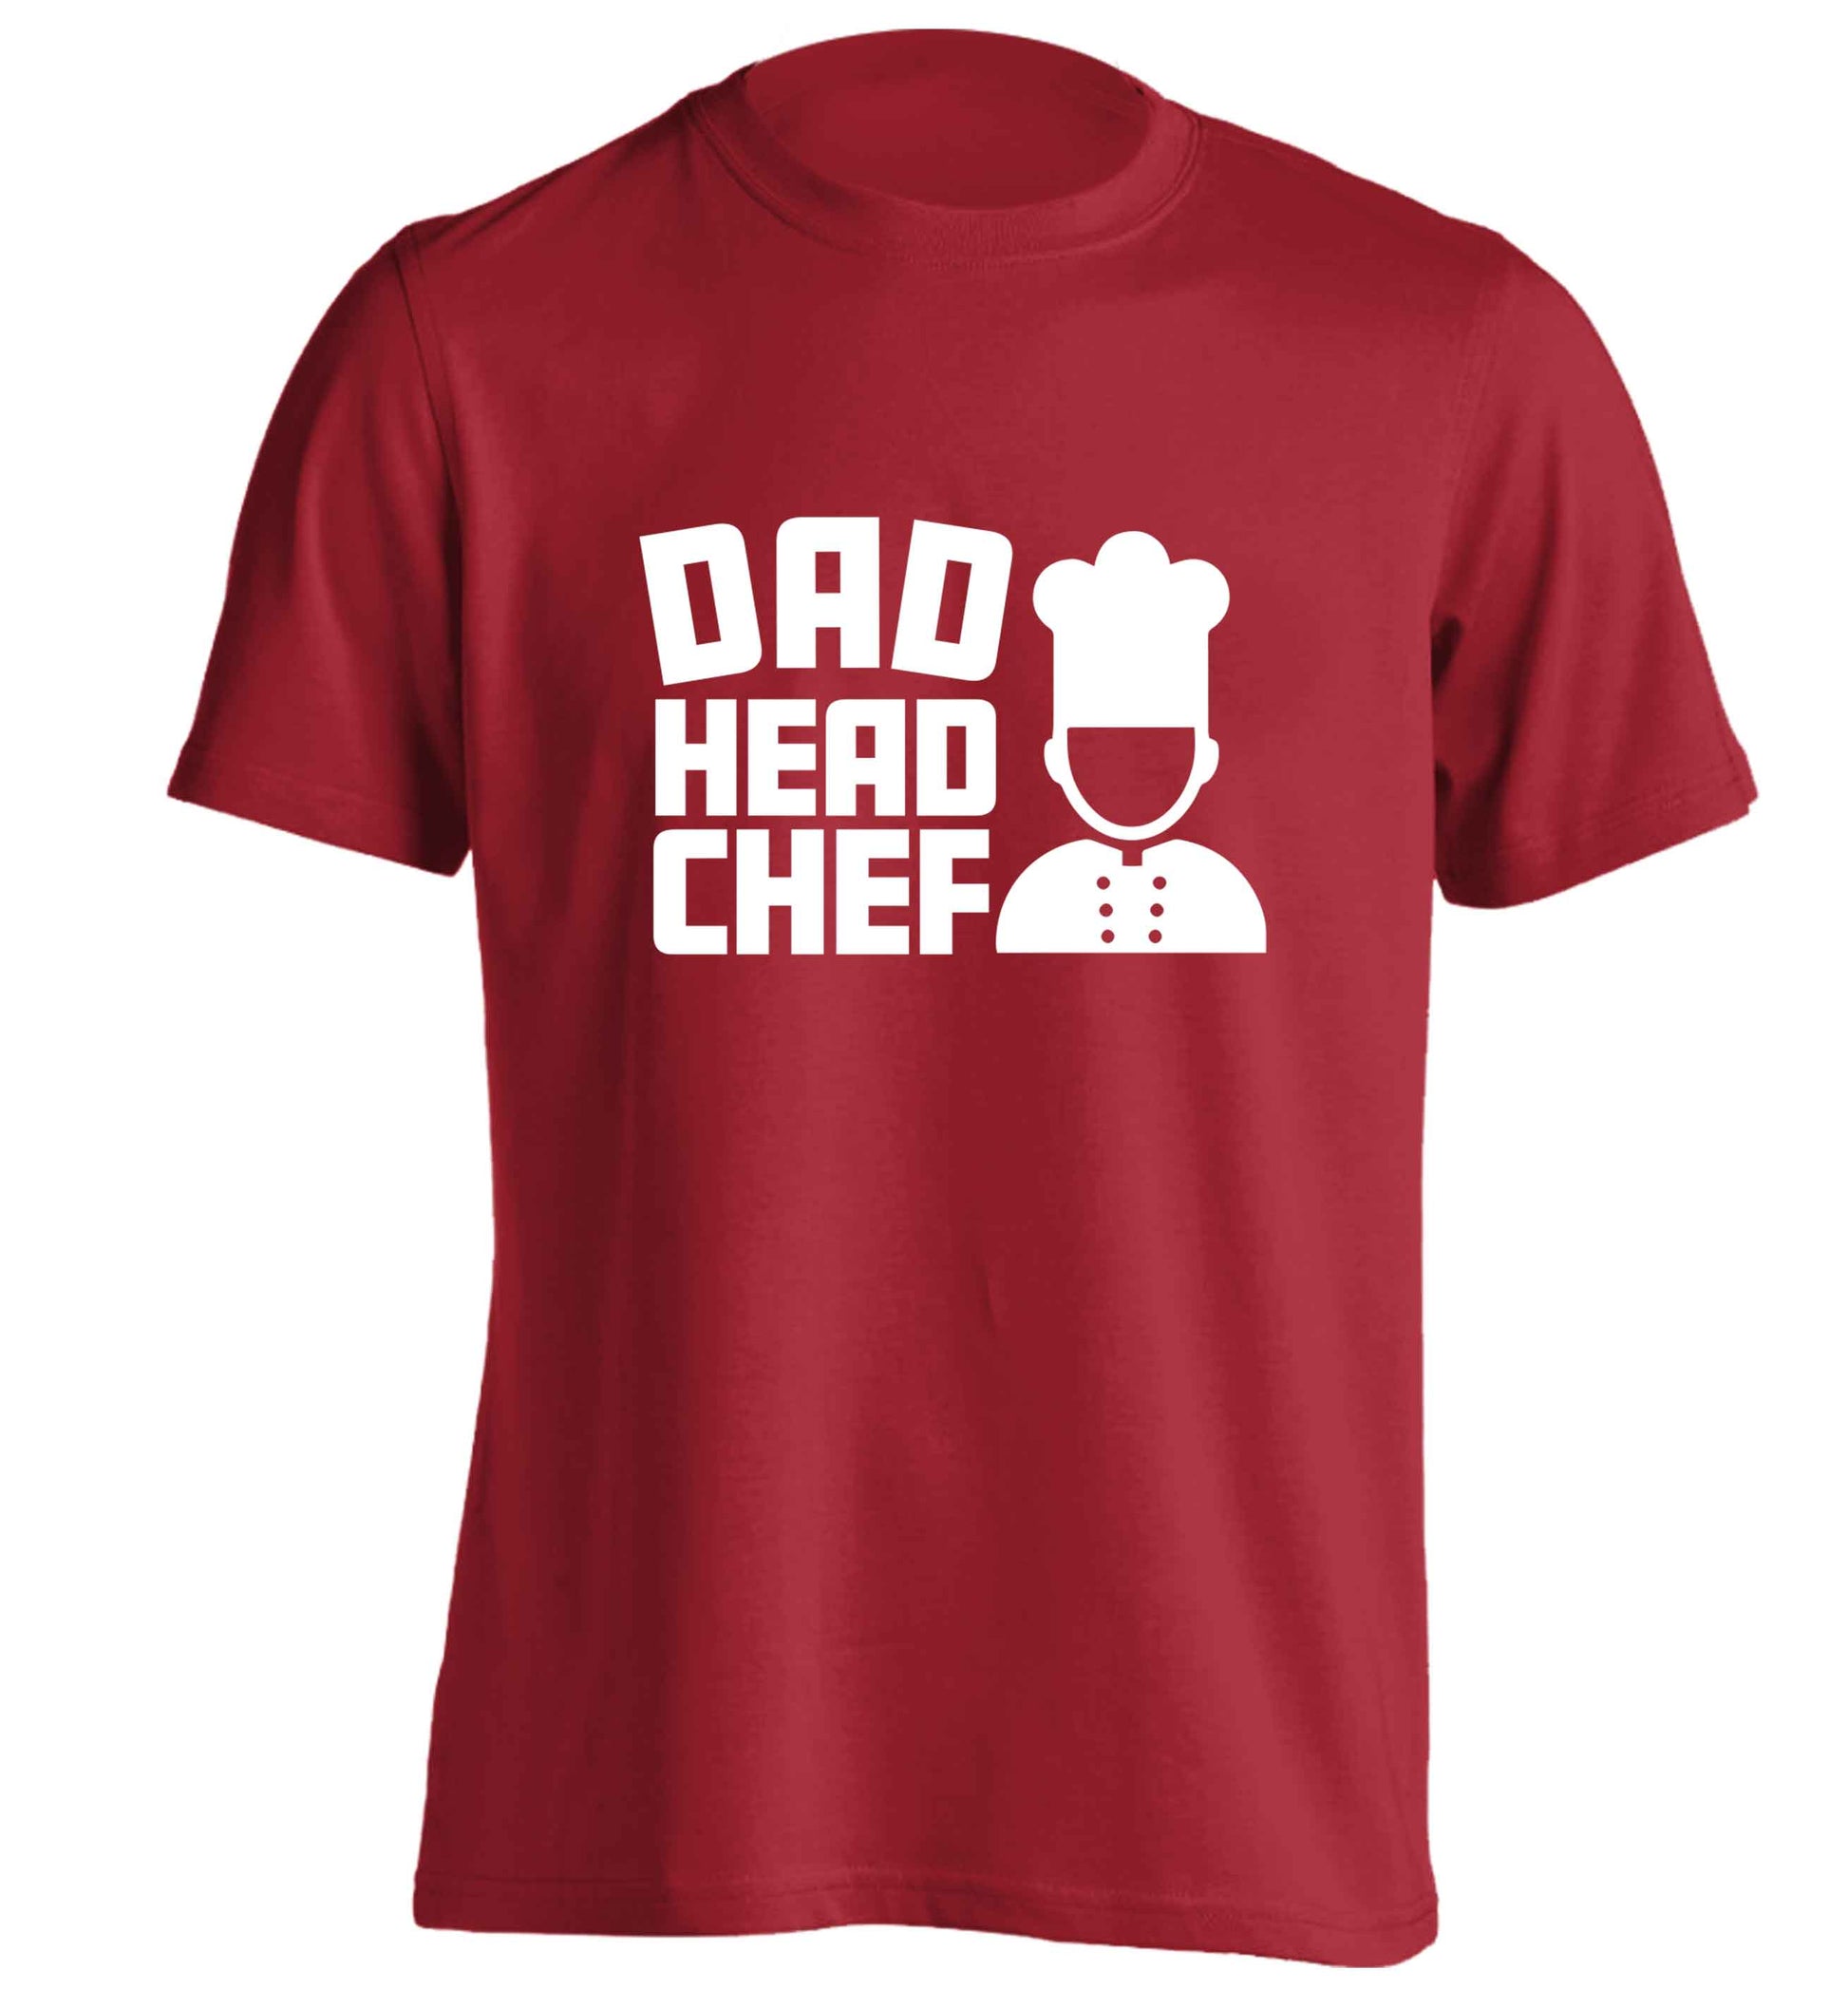 Dad head chef adults unisex red Tshirt 2XL